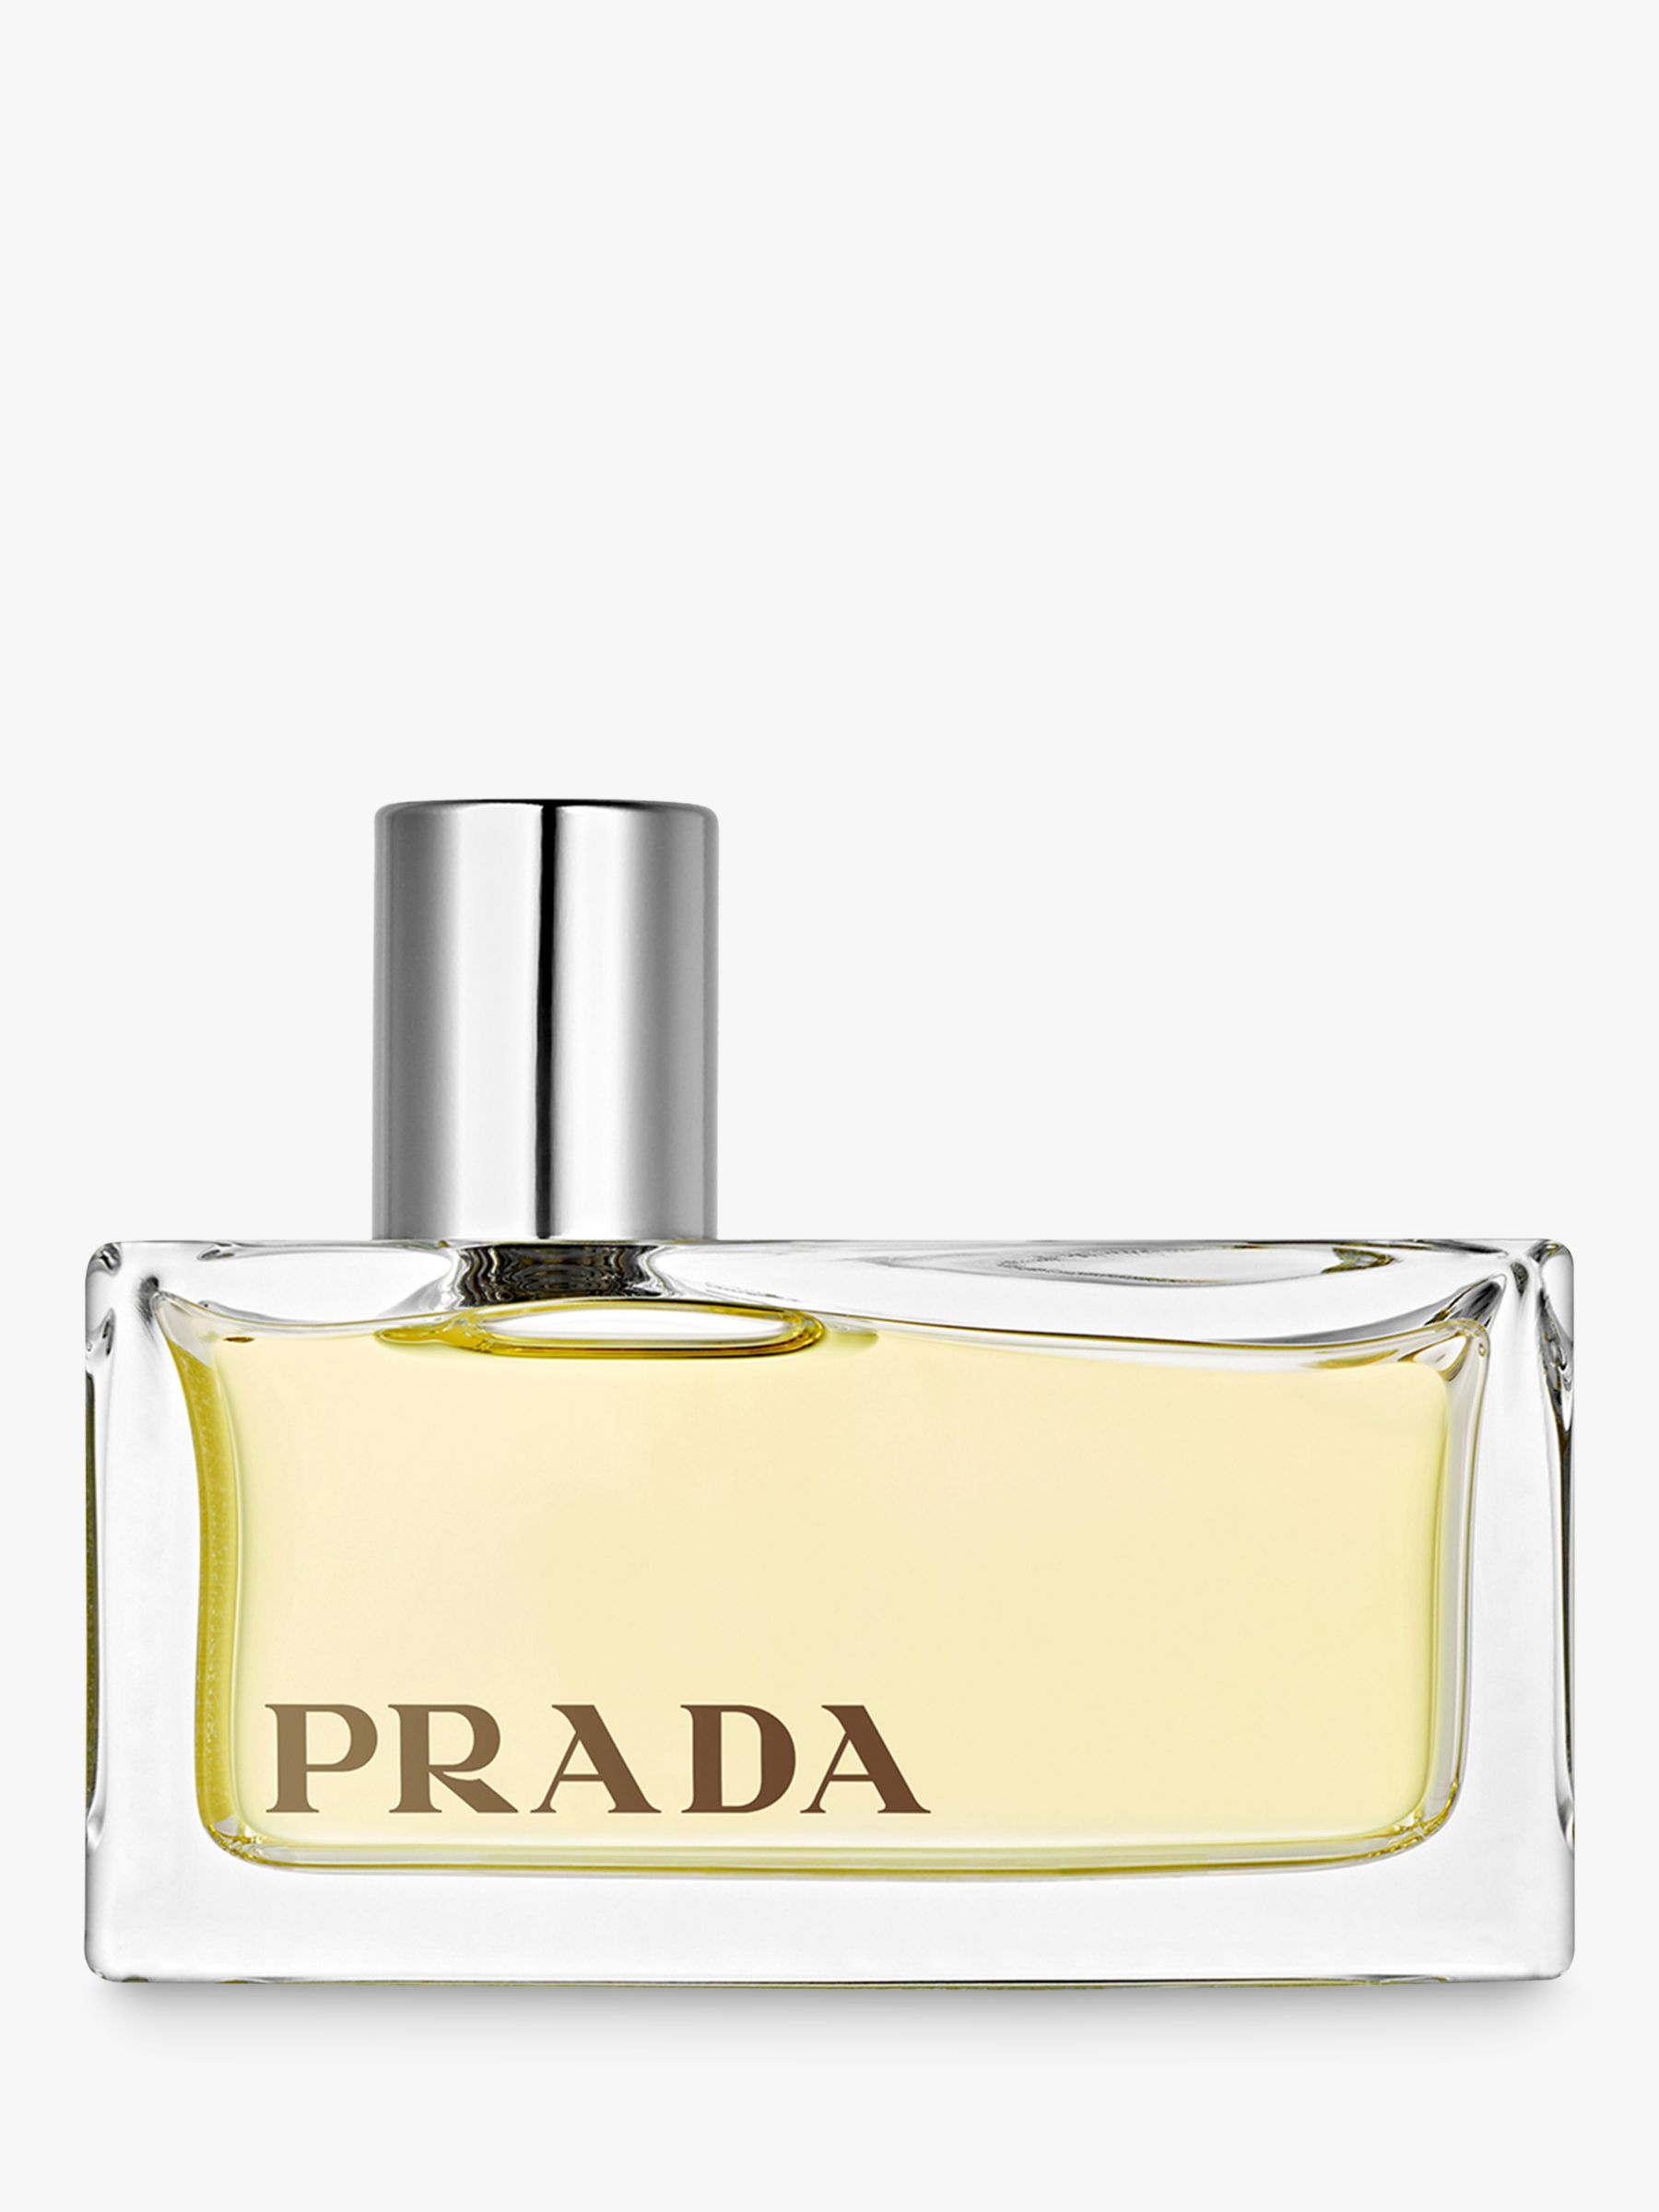 Prada Amber Eau De Parfum 50ml Spray: Beauty Eau De Parfum, Perfume, Perfume  Spray :443